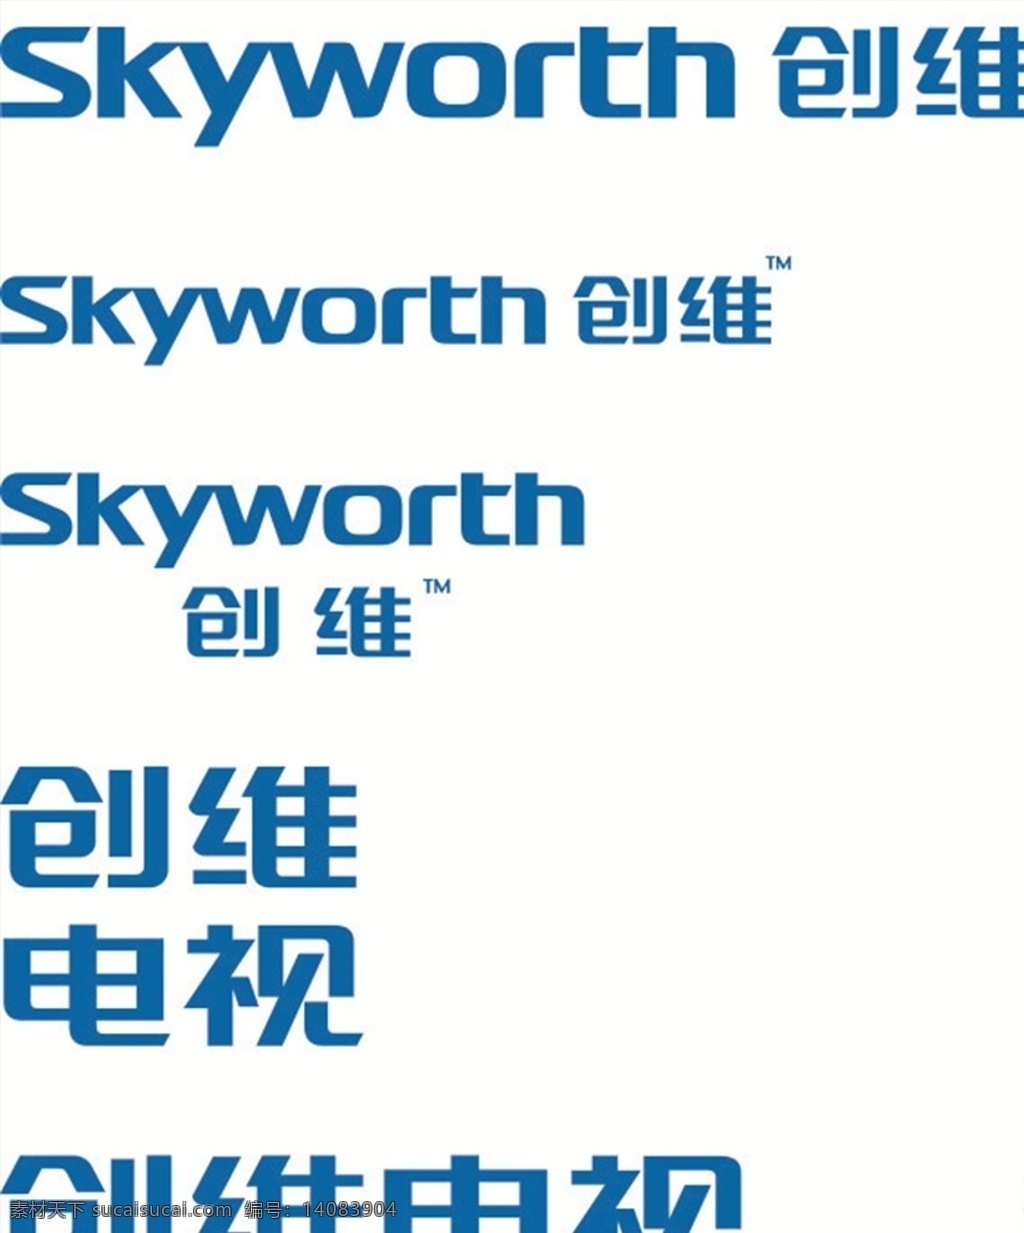 矢量标志 标识 标志 logo 矢量 创维电视标志 创维 电视 创维标志 skyworth 创维dvd